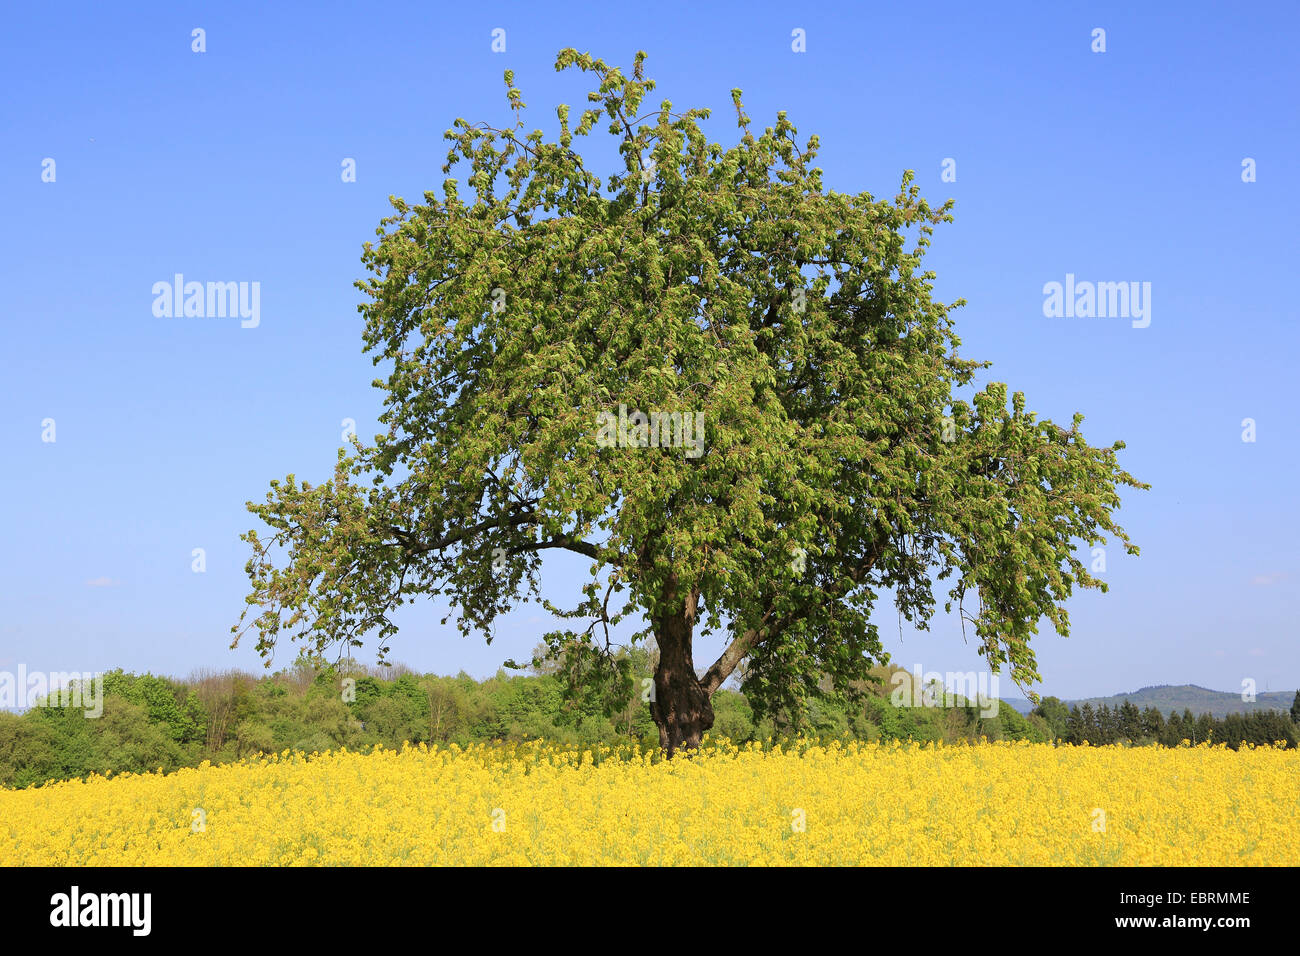 Wild cherry, Sweet cherry, gean, mazzard (Prunus avium), cherry tree in blooming rape field, Germany Stock Photo